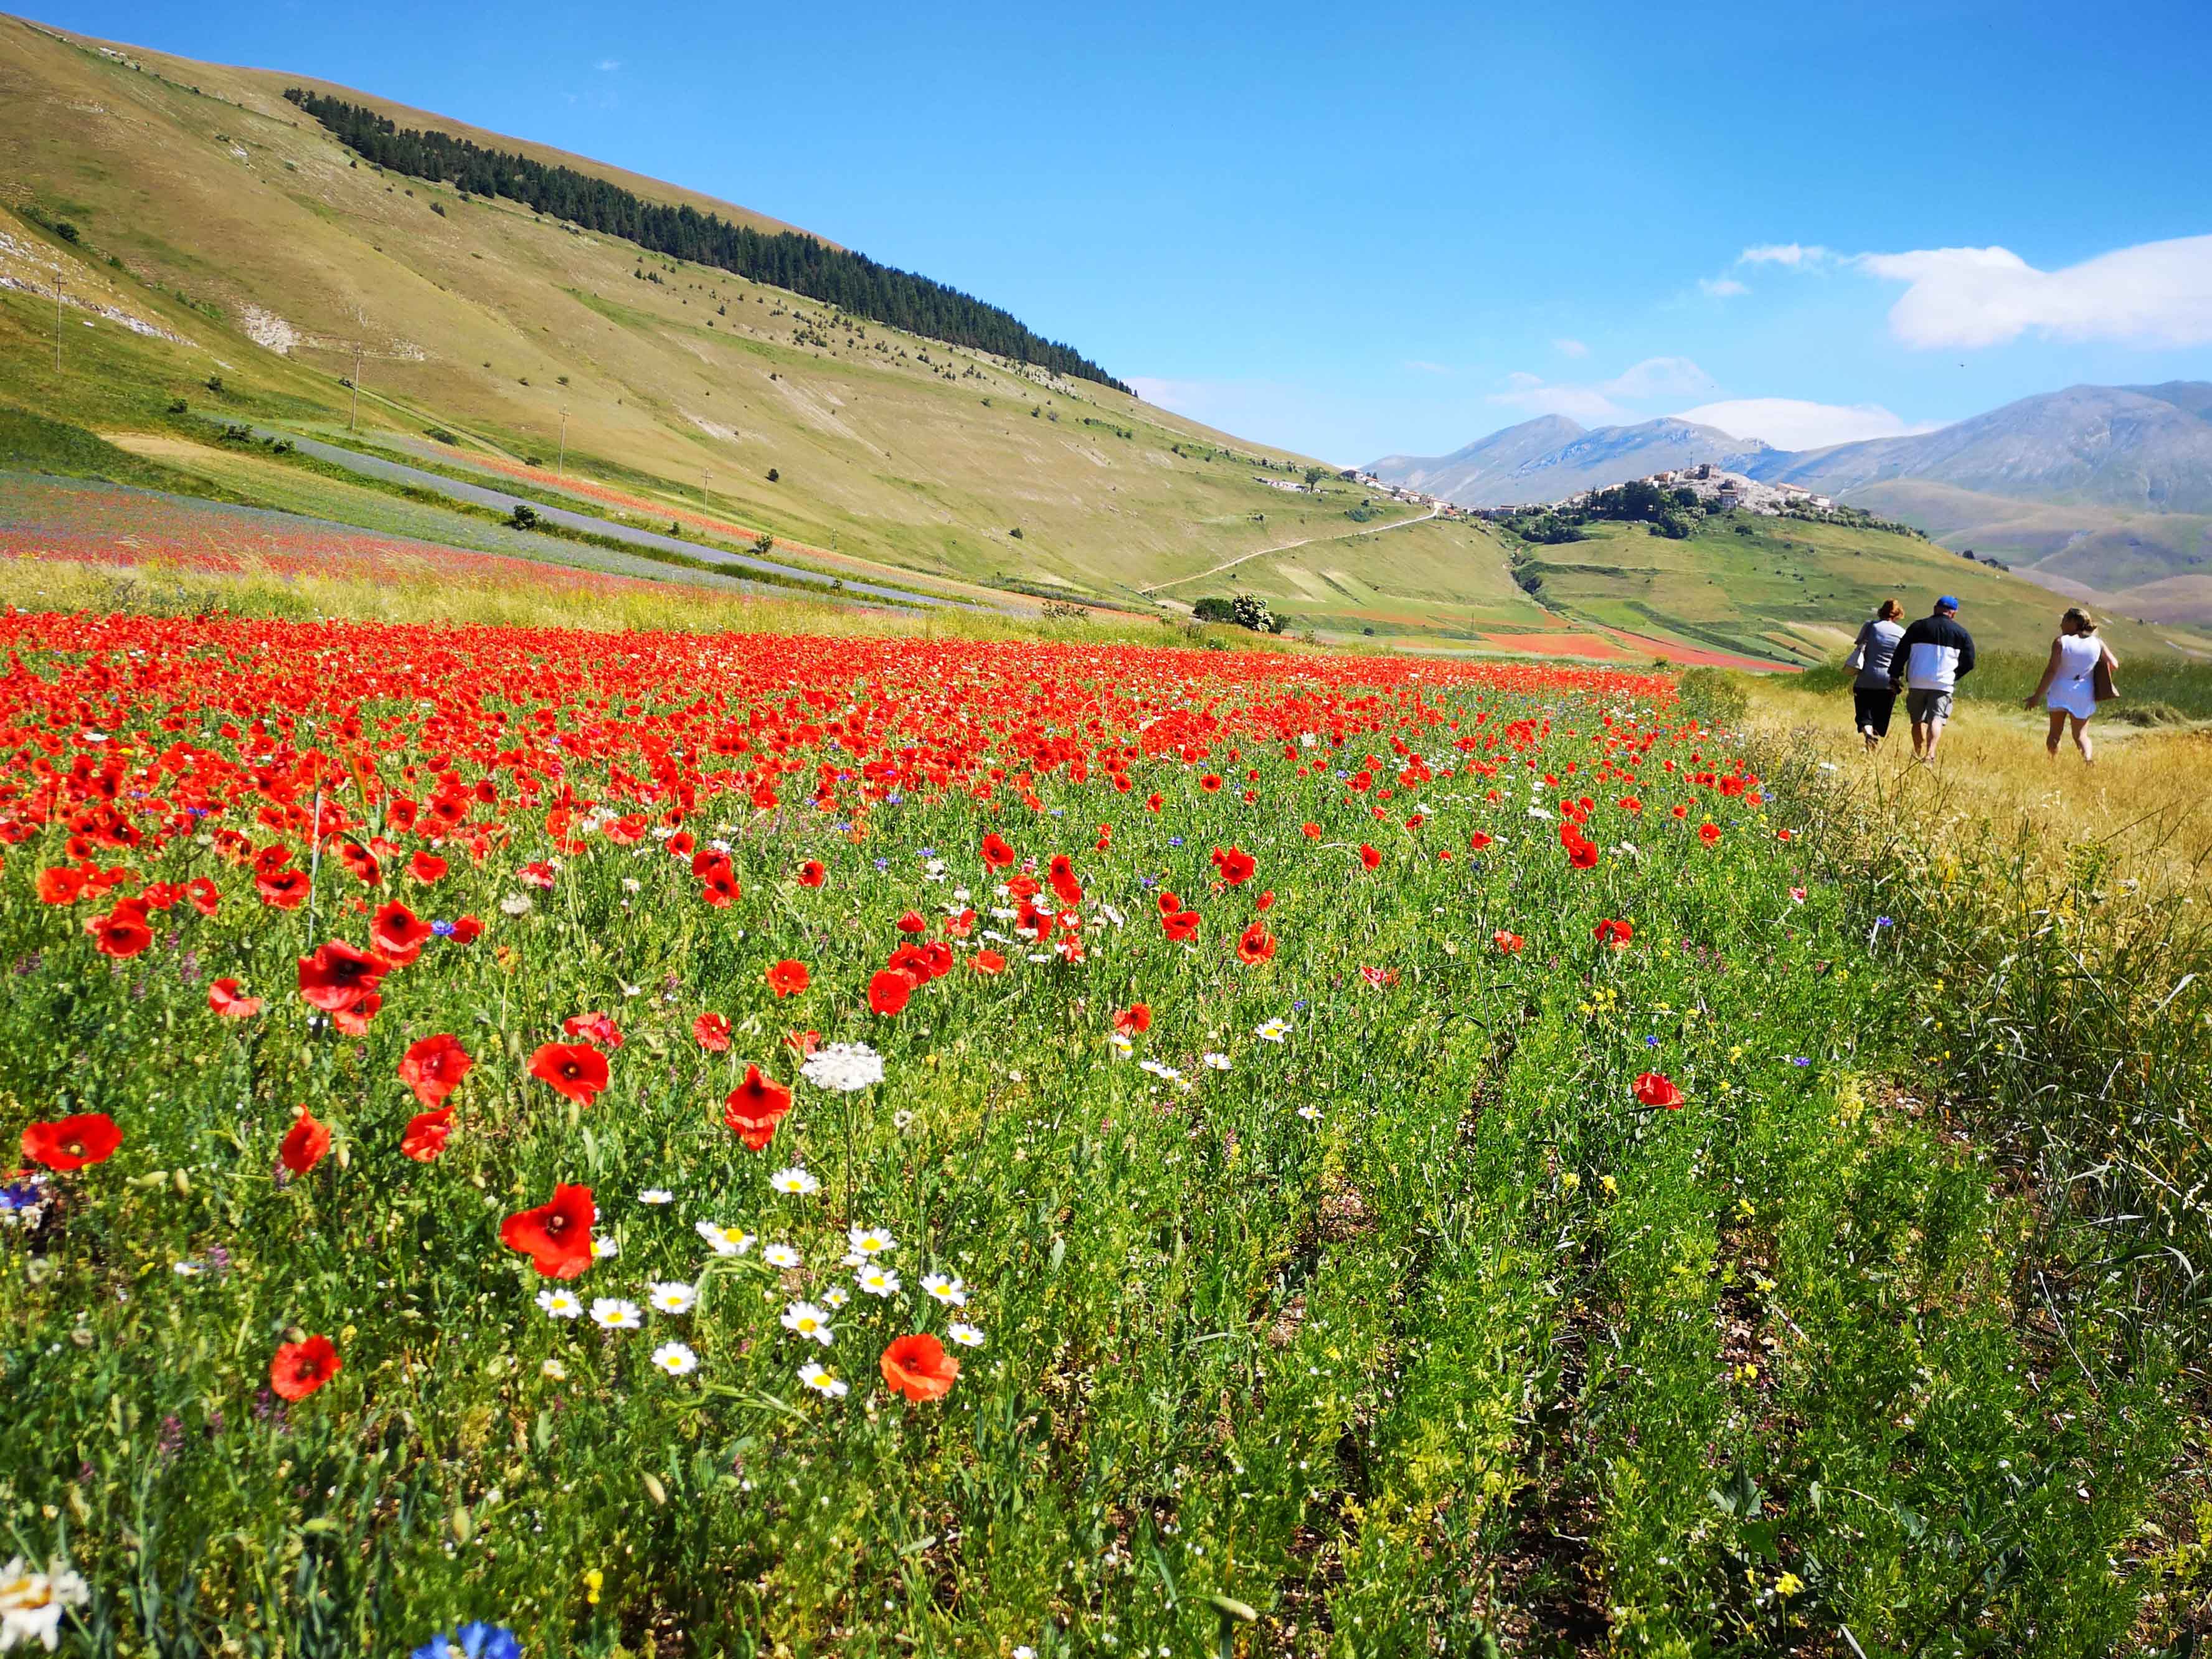 Parco Nazionale dei Monti Sibillini: trekking, fioritura, rafting e bici!